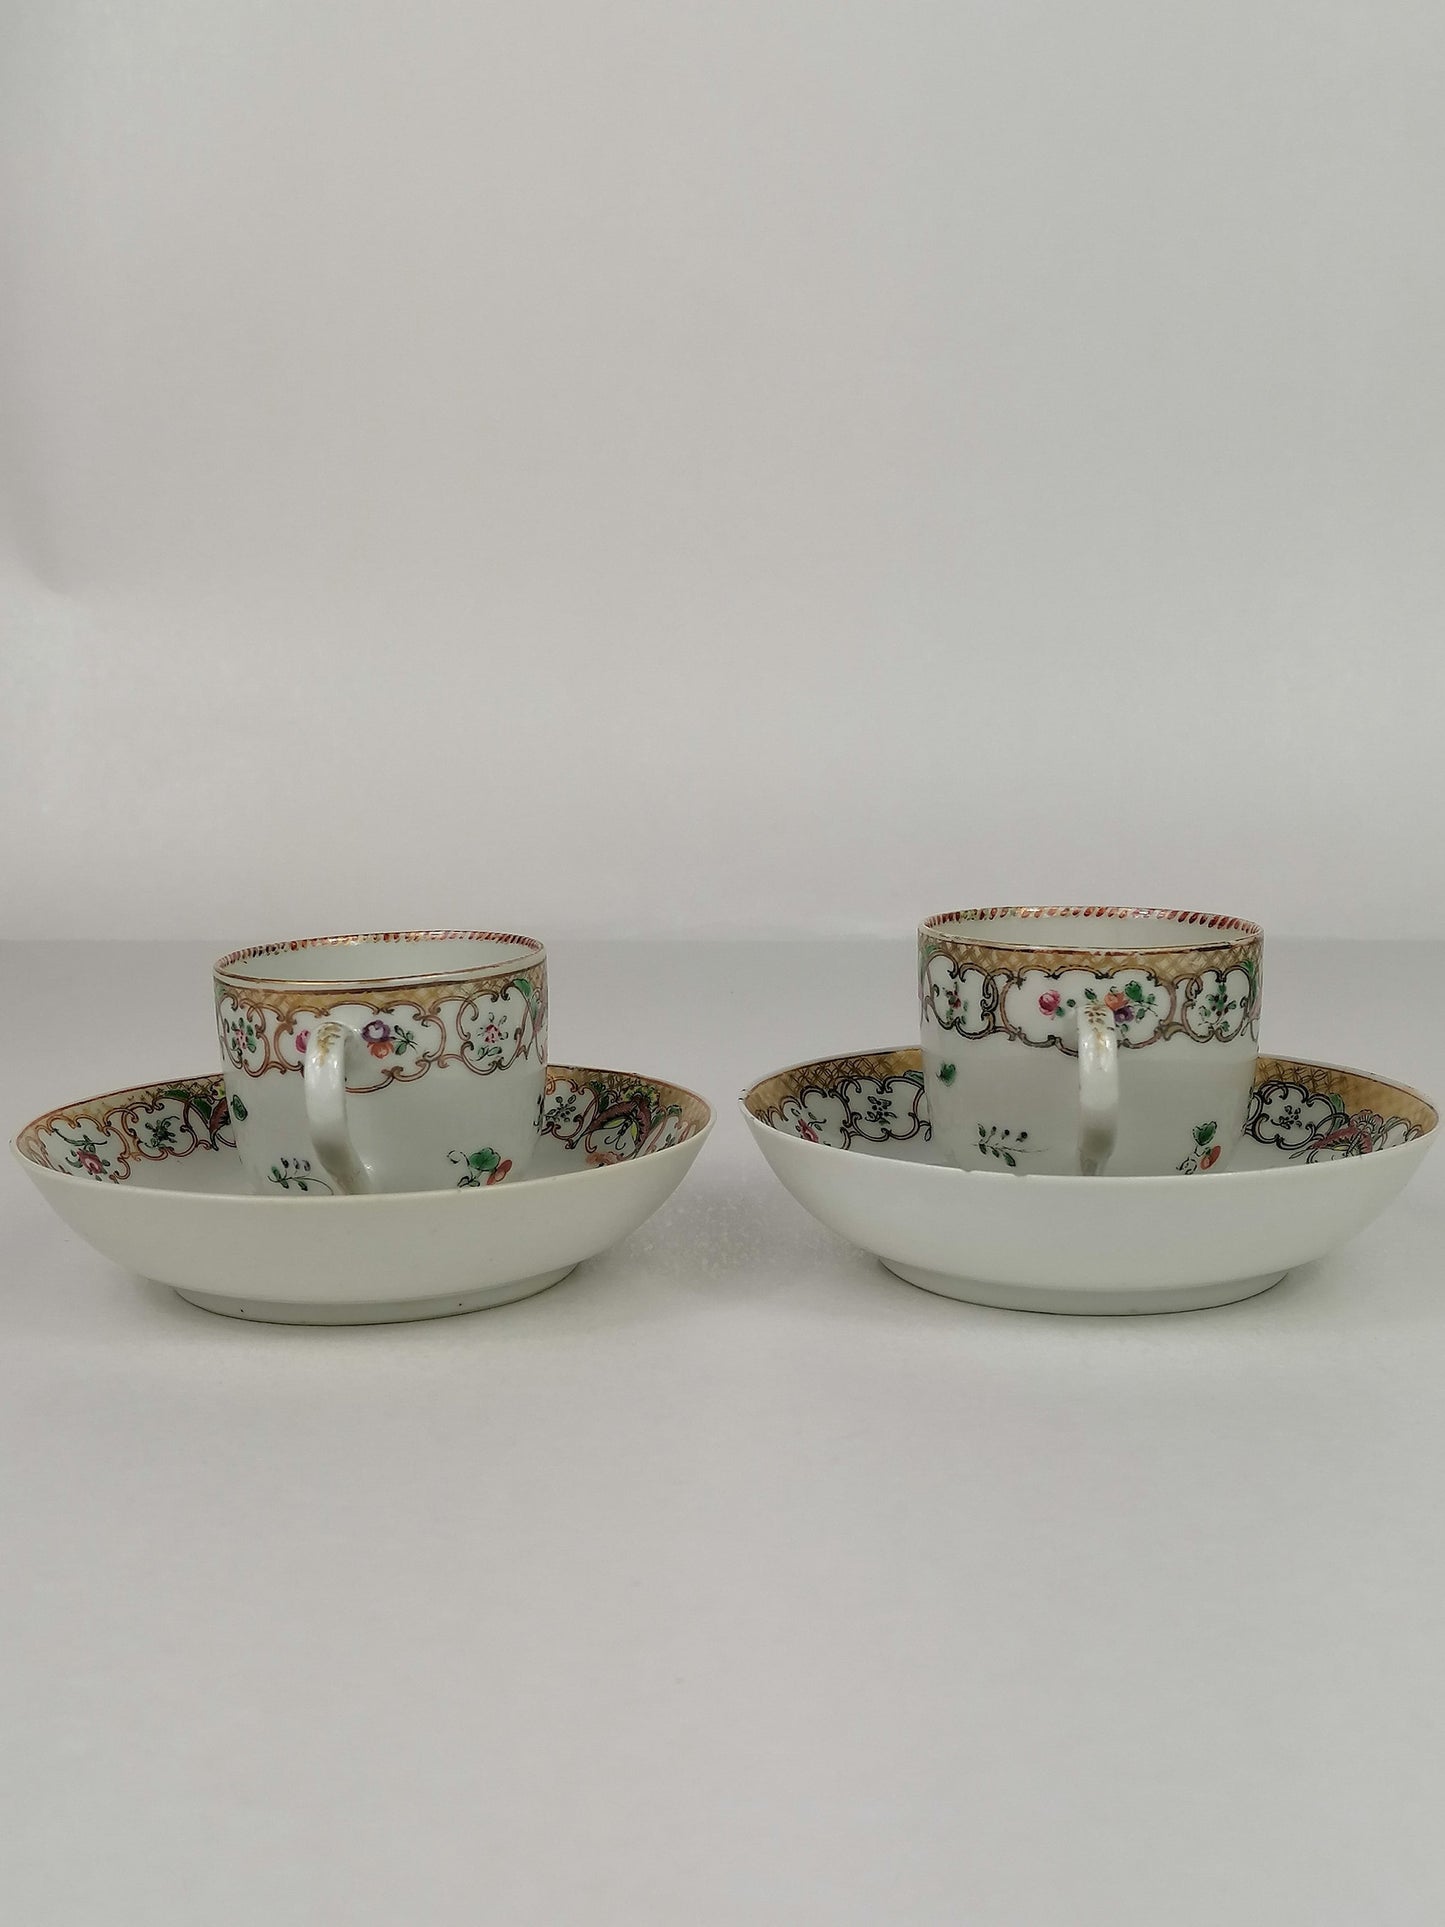 古董中国茶杯和碟子 2 件套 // 18 世纪 // 清代